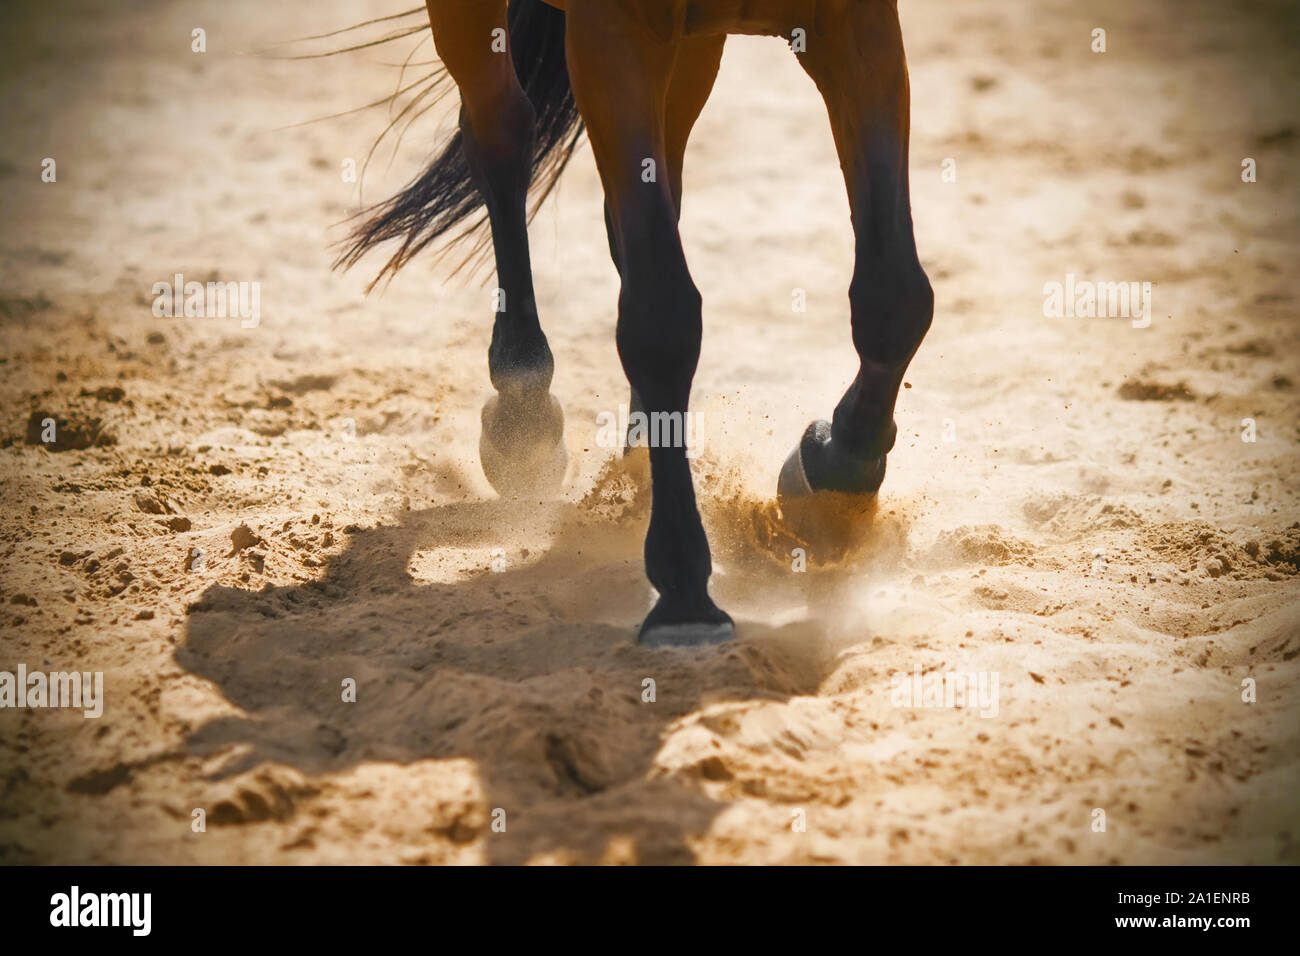 Il grazioso gambe di una baia a cavallo al galoppo attraverso la sabbia, sollevando la polvere nella calda luce del sole. Foto Stock